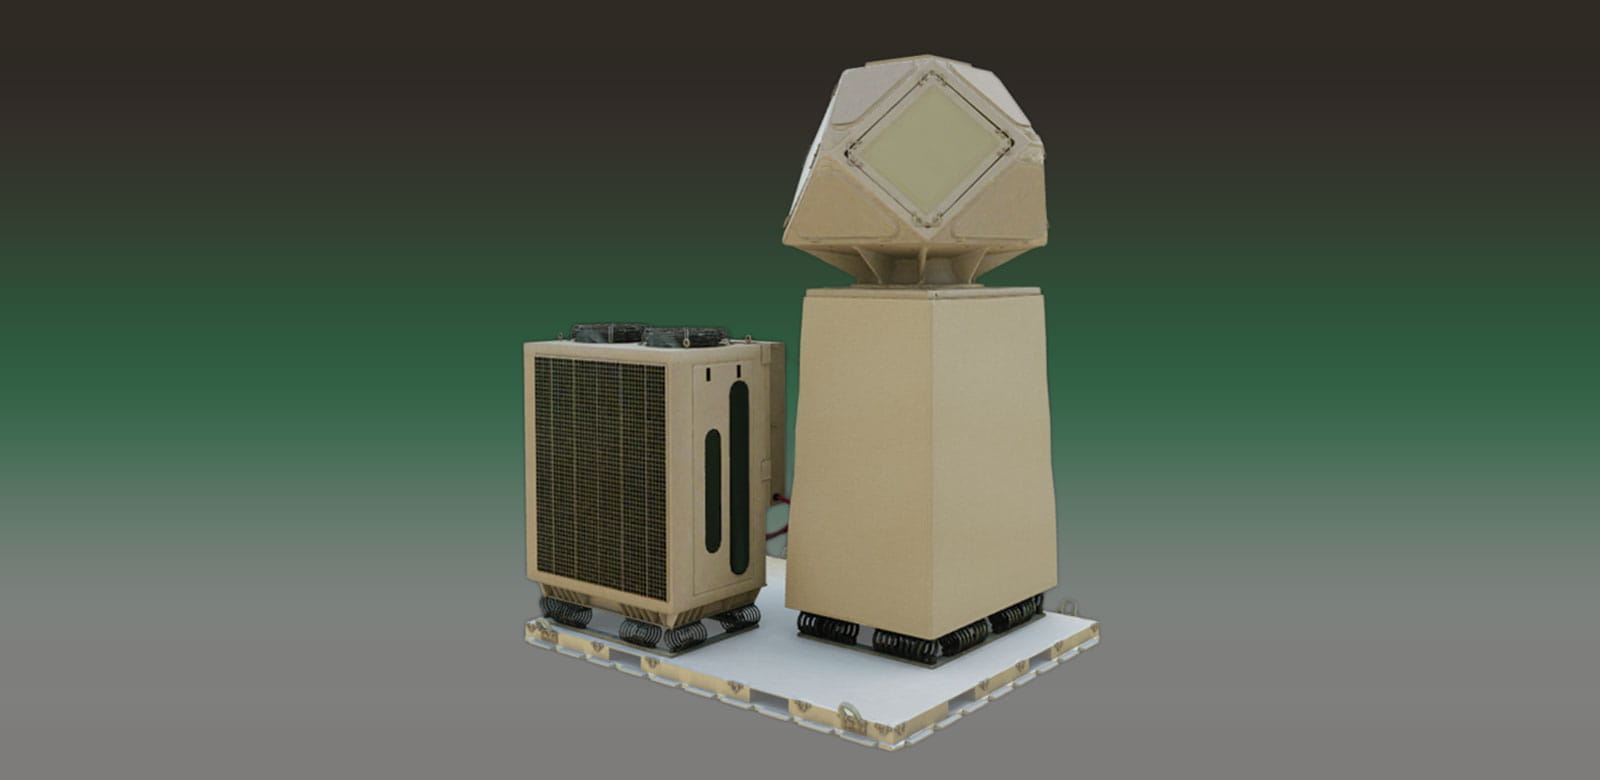 W konfiguracji stałej lub mobilnej radar KuRFS sprawdził się jako skuteczny radar do namierzania śledzenia i identyfikowania zagrożeń, w tym tak małych obiektów jak 9-milimetrowa kula.